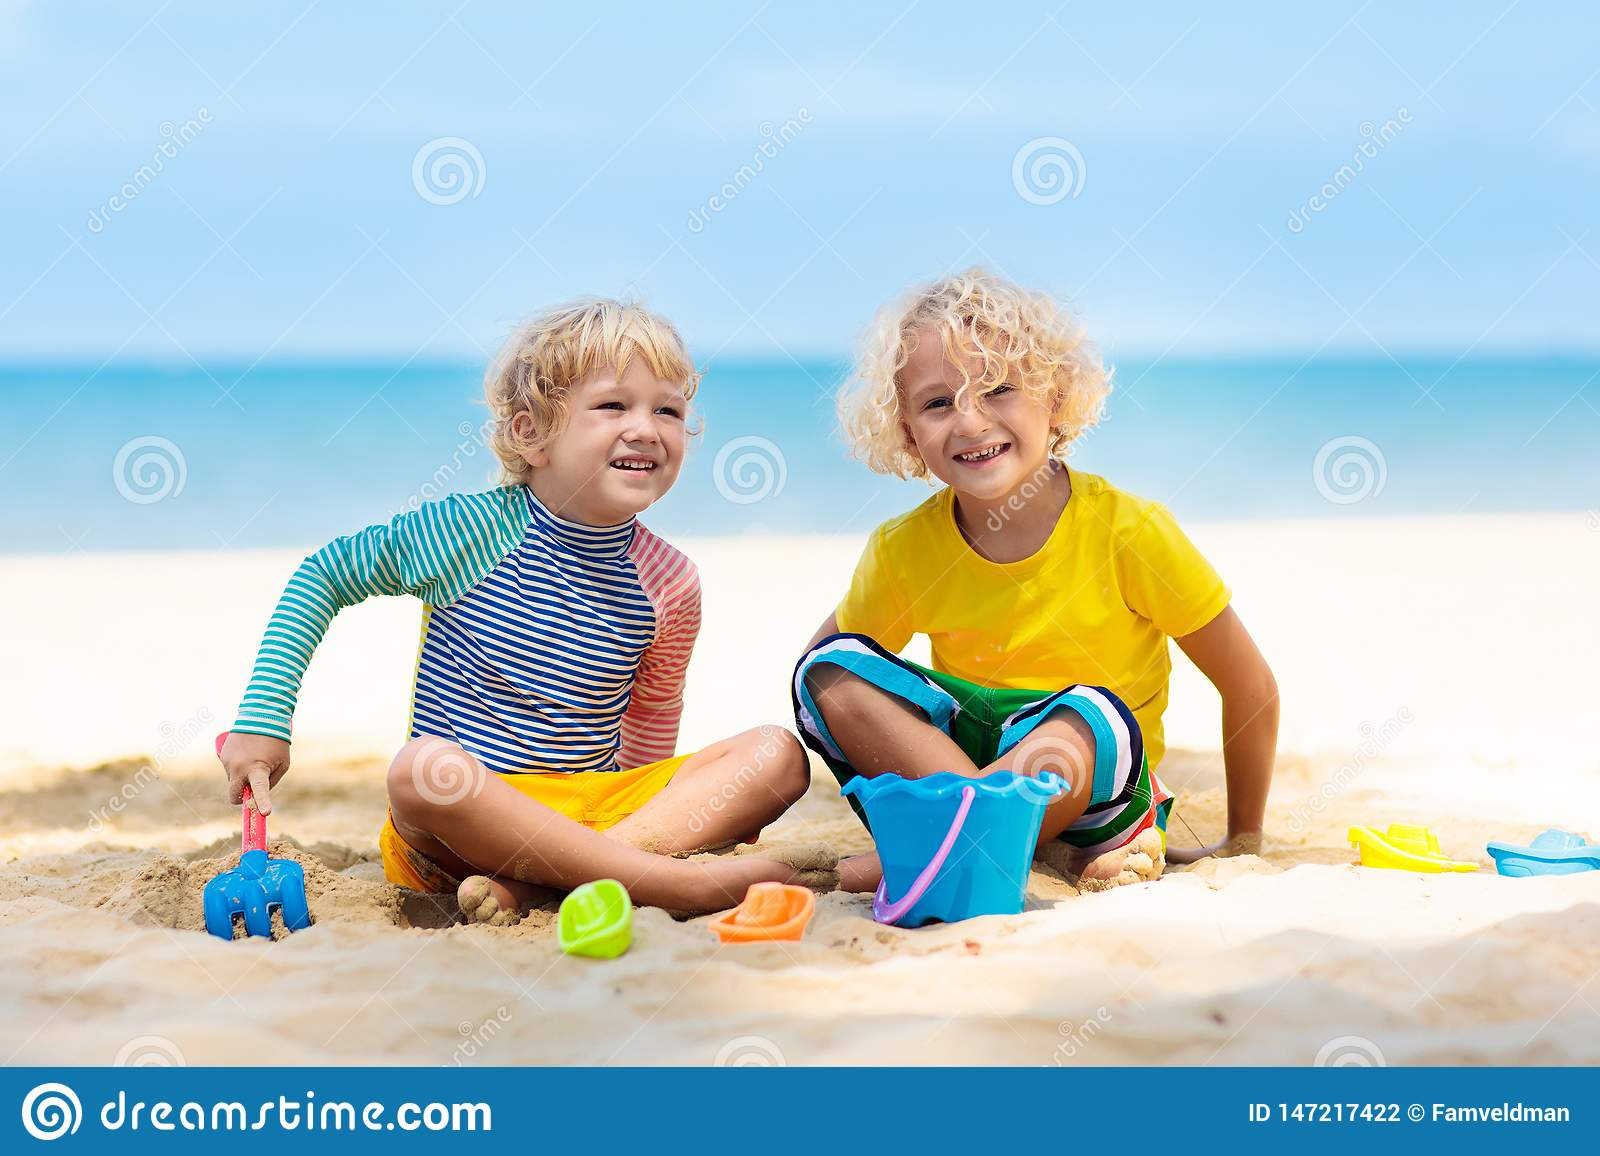 Kinder, Die Auf Einem Sandigen Strand Spielen Kinderspiel innen Kinder Bilder Strand